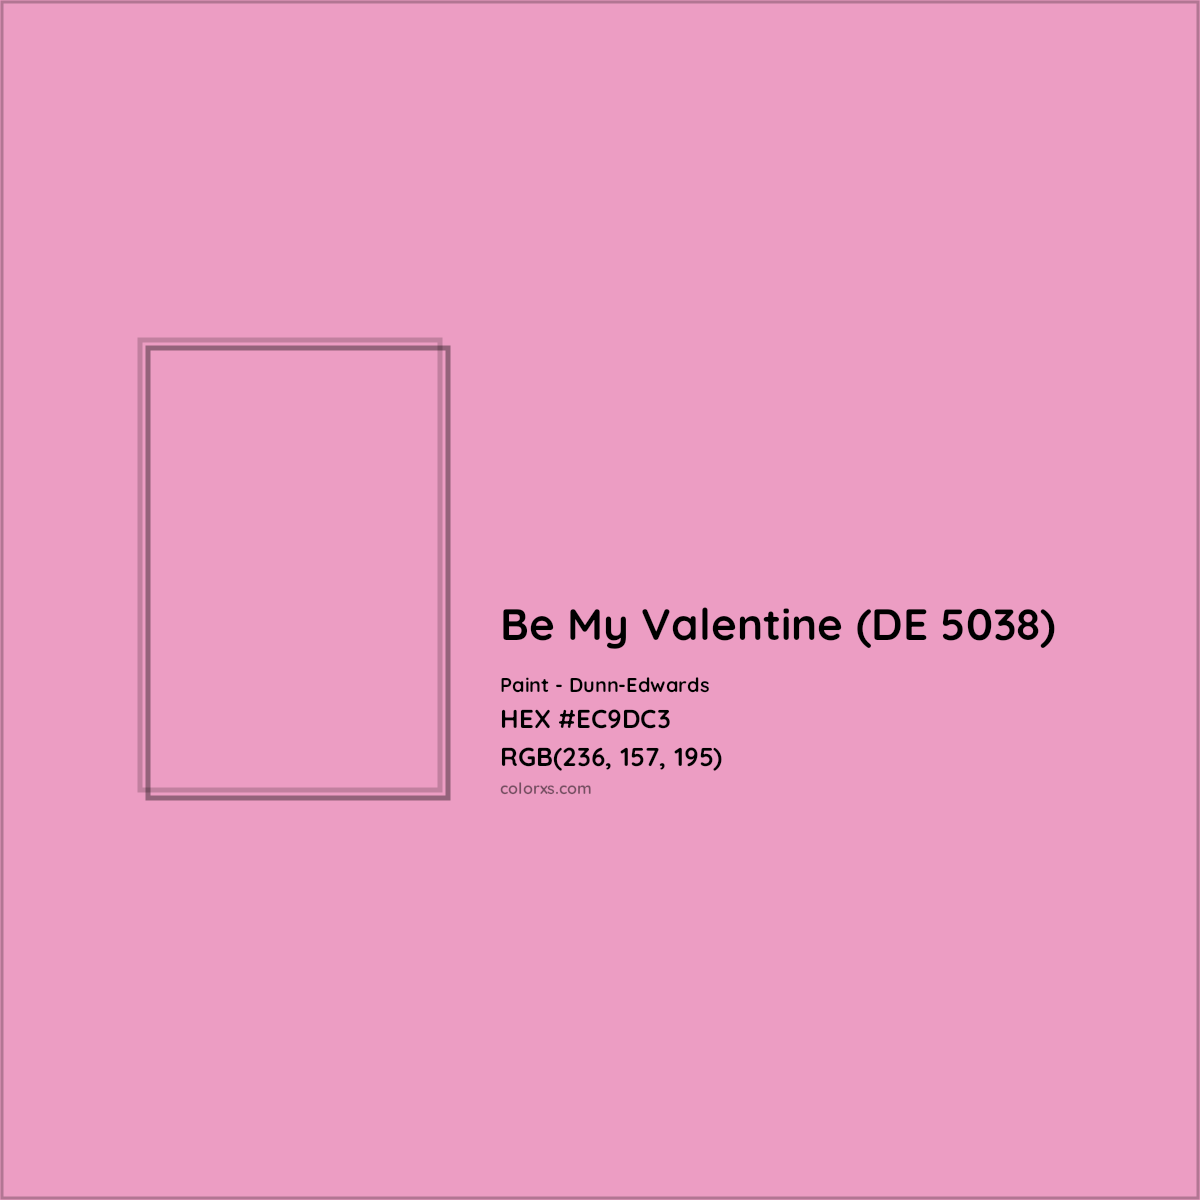 HEX #EC9DC3 Be My Valentine (DE 5038) Paint Dunn-Edwards - Color Code